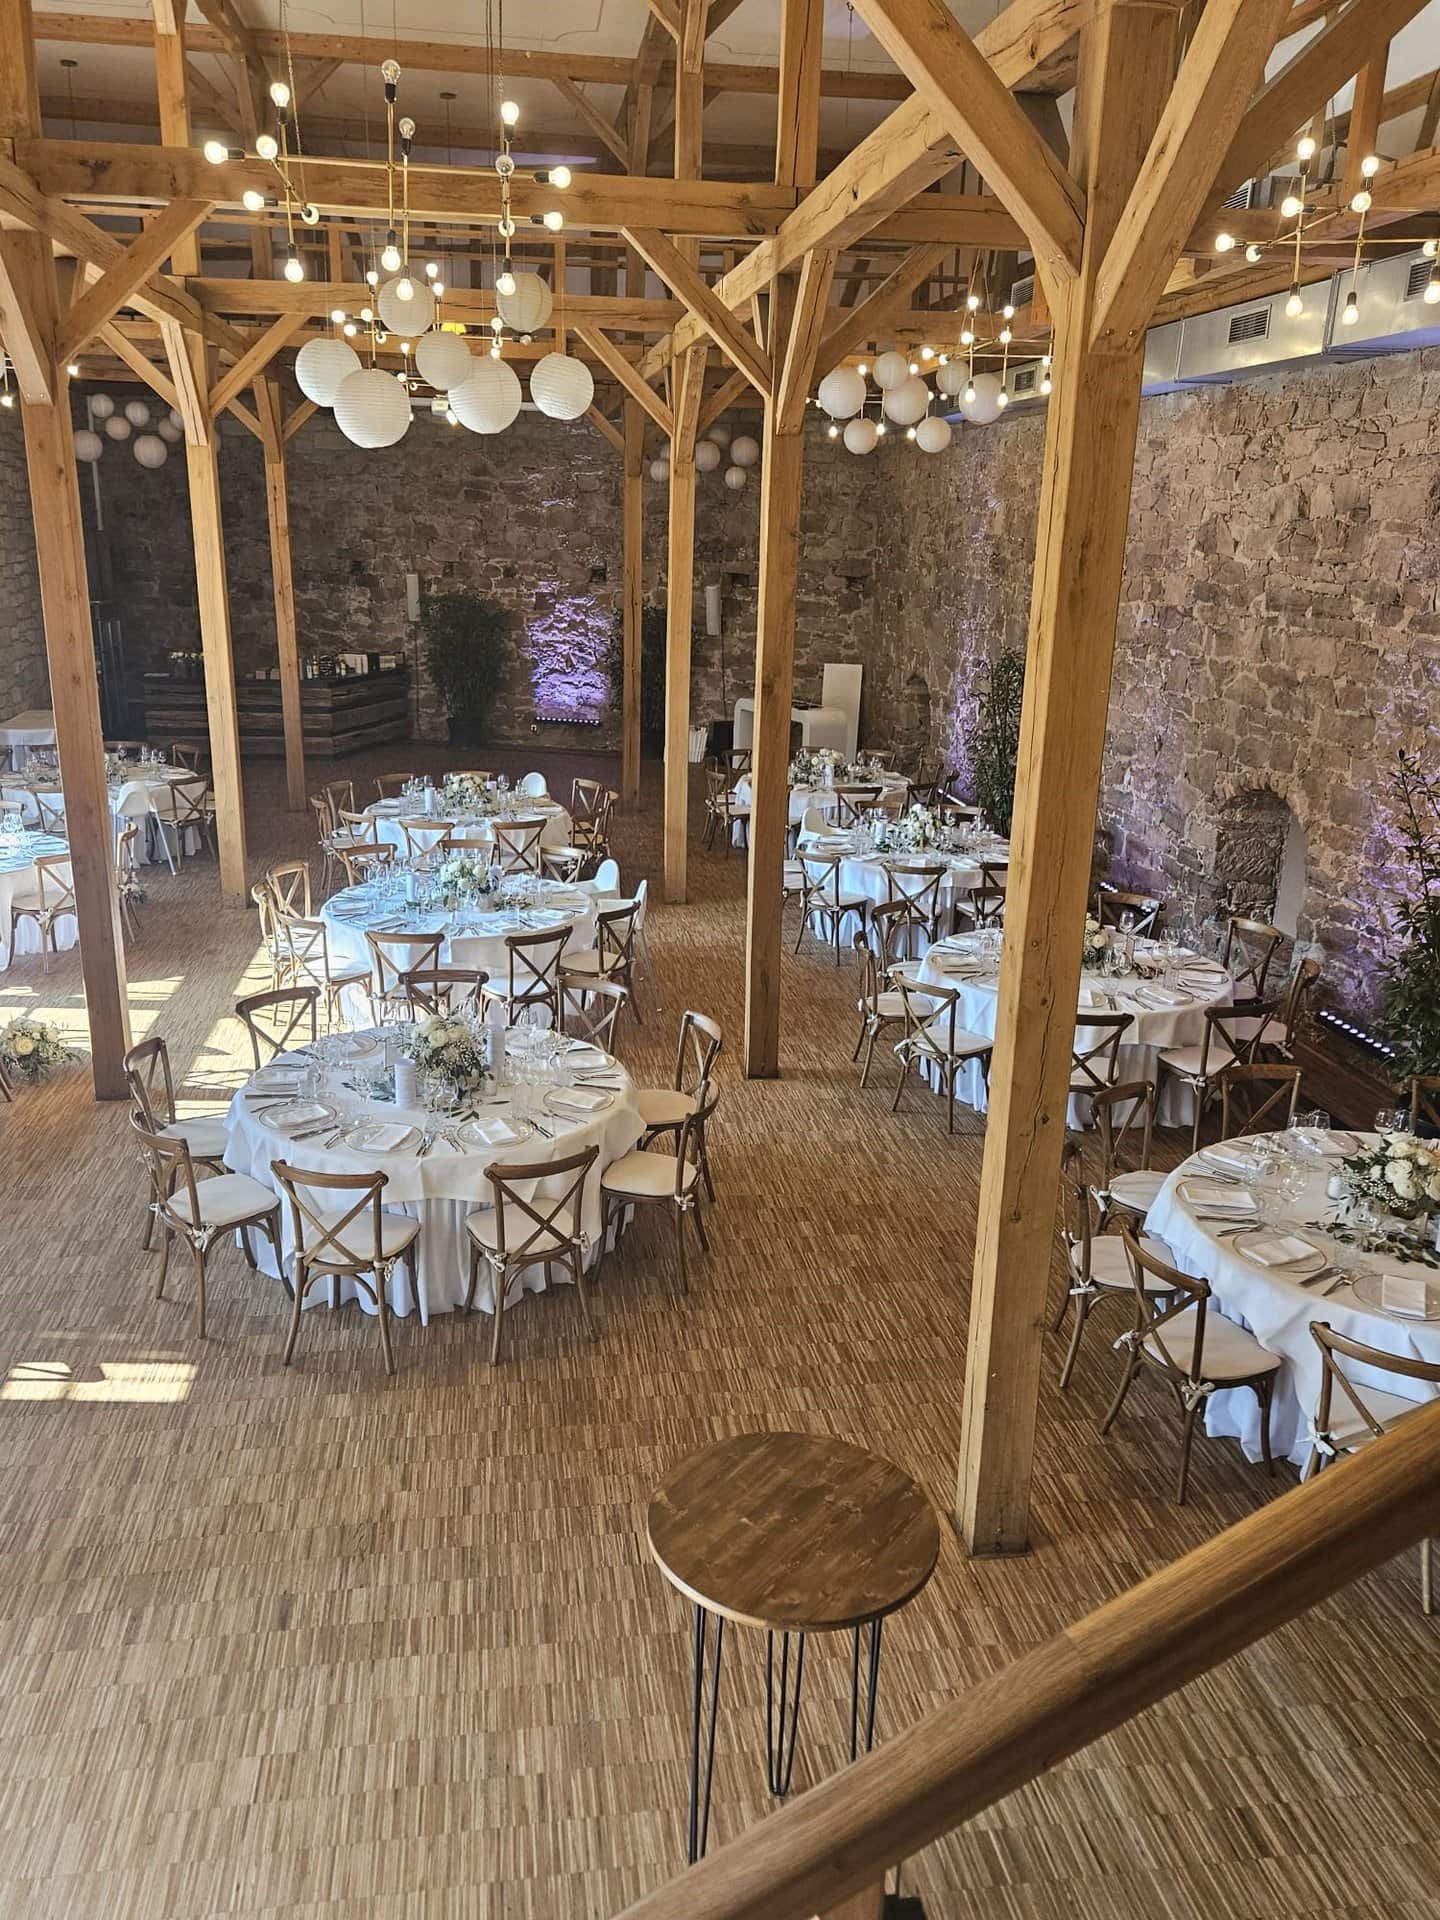 Hoher Veranstaltungssaal im Schloss Michelfeld mit Holzbalken, mehreren runden Esstischen mit weißen Tischdecken und von den Dachsparren hängenden Kugellampen. Steinmauern und Bäume schmücken den